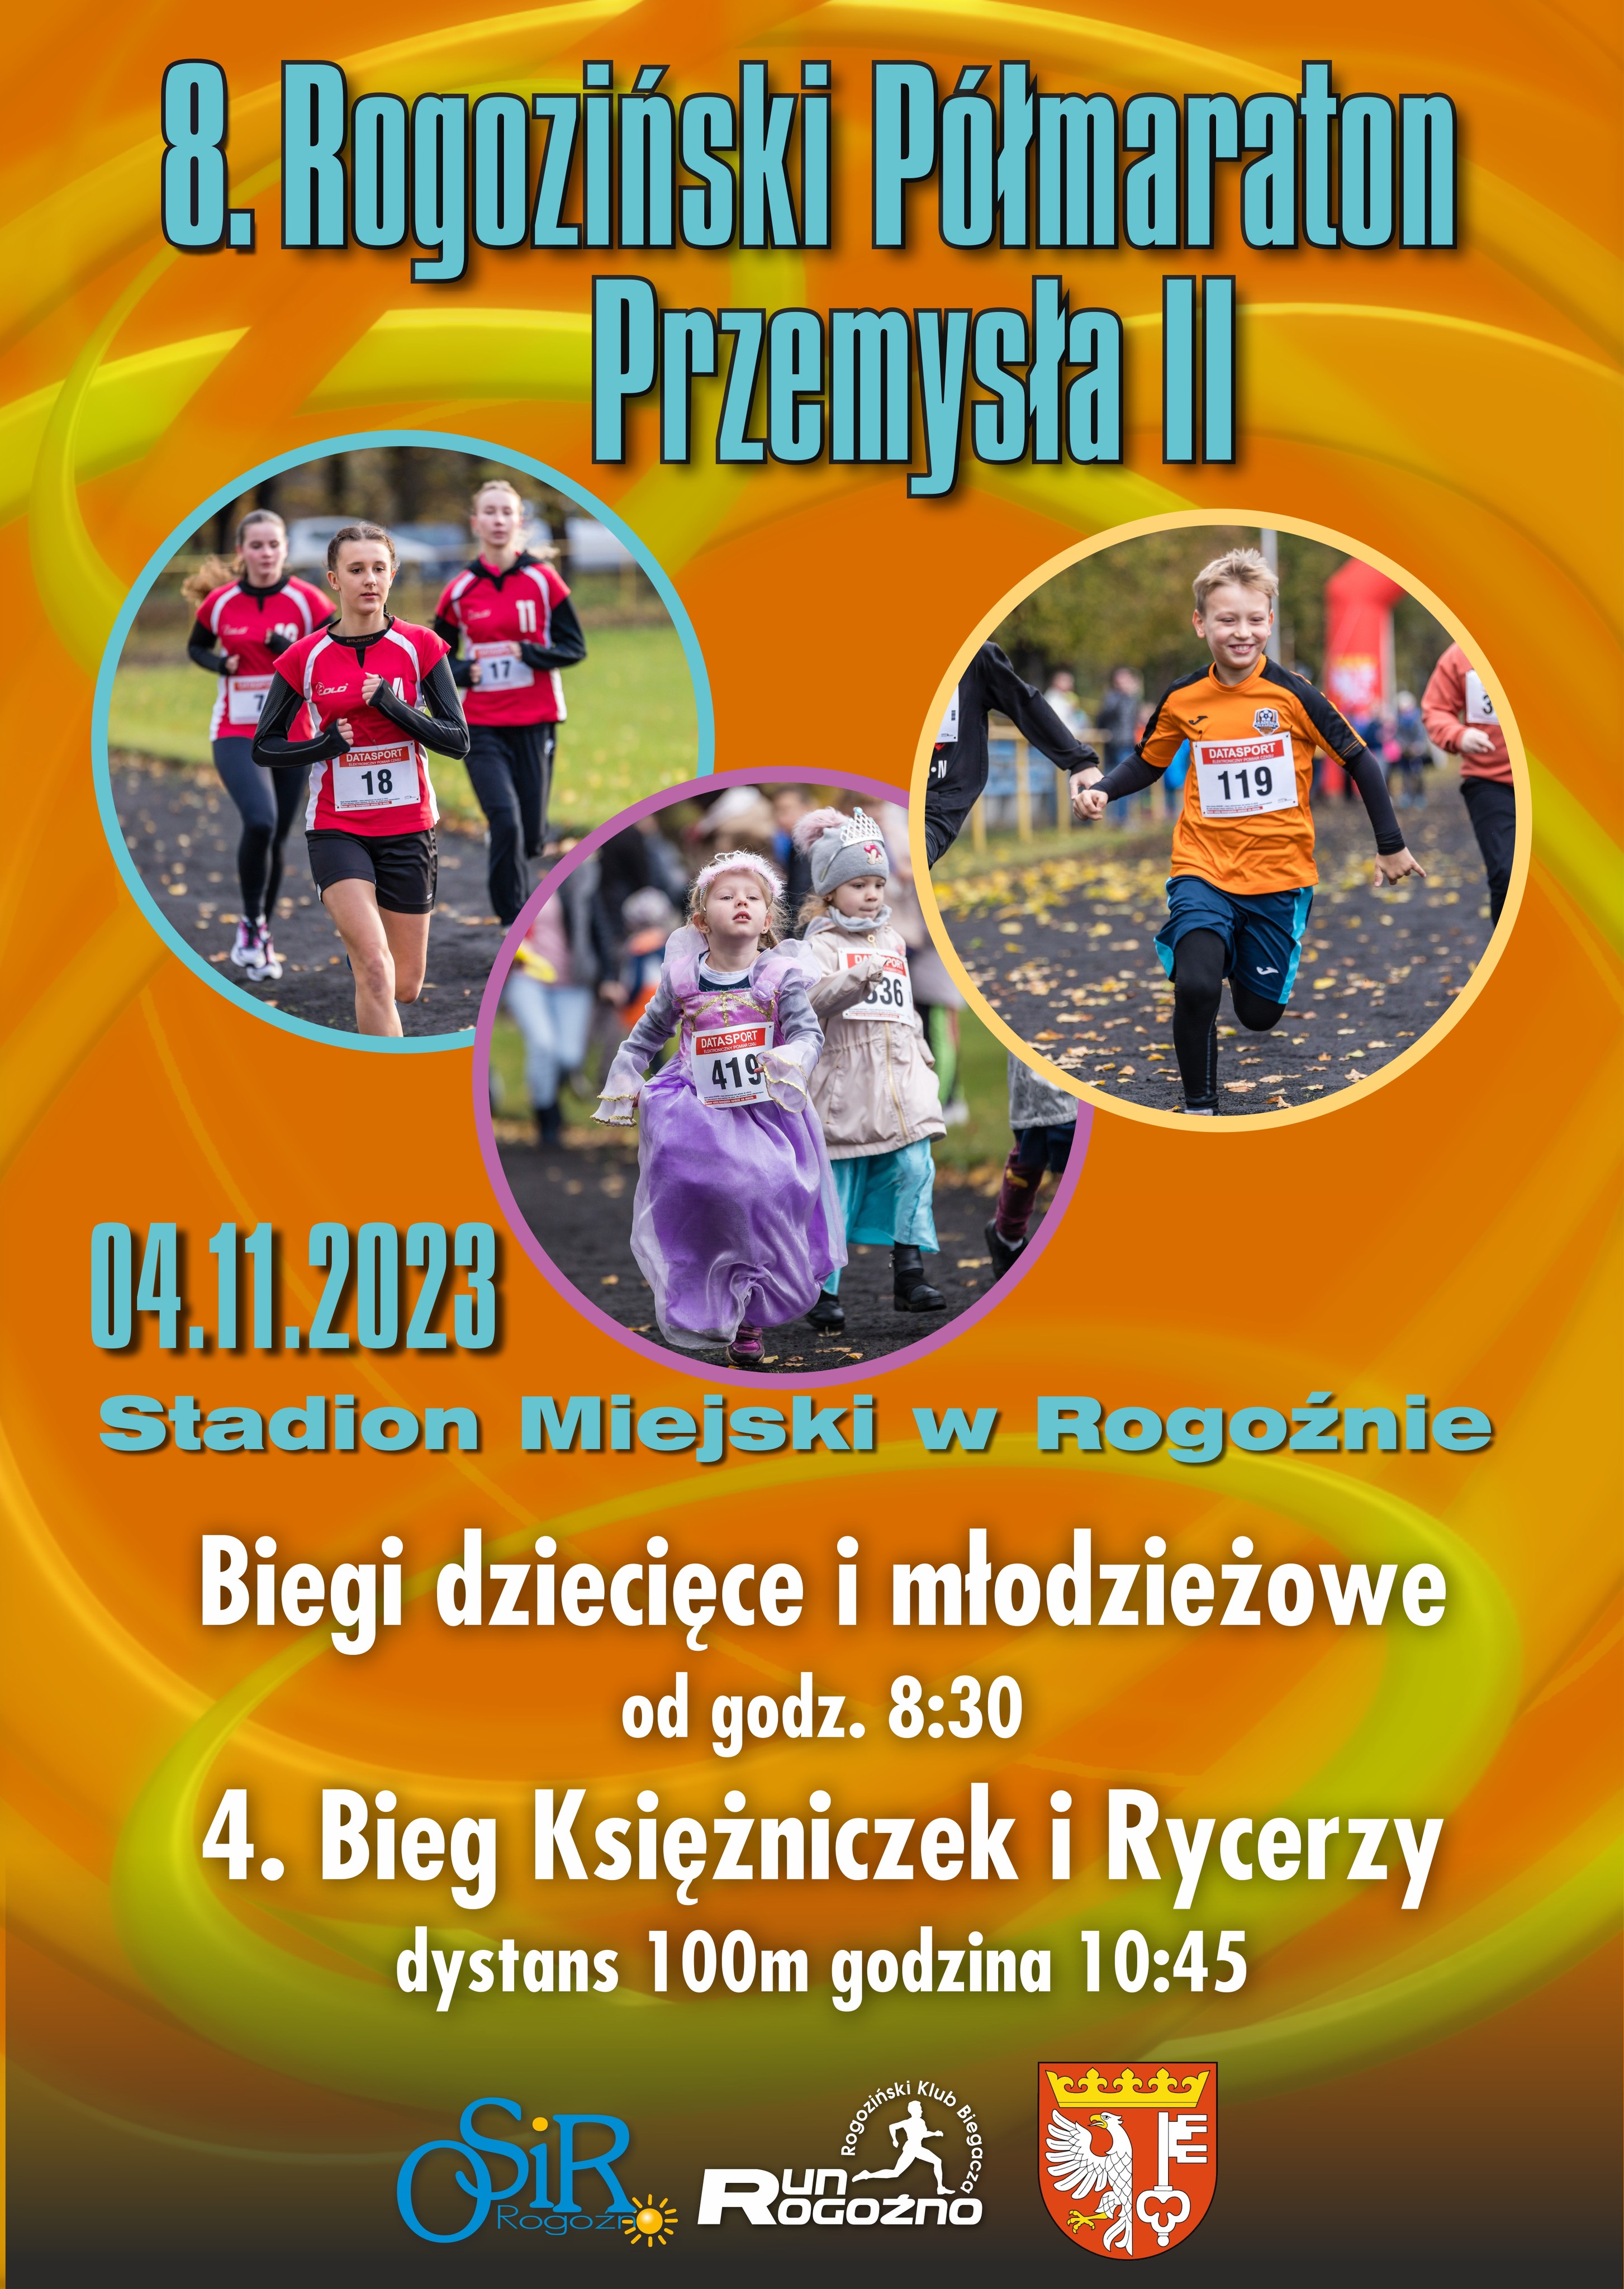 grafika promująca biegi dzieci i młodzieży podczas8. Rogozińskiego Półmaratonu Przemysła II